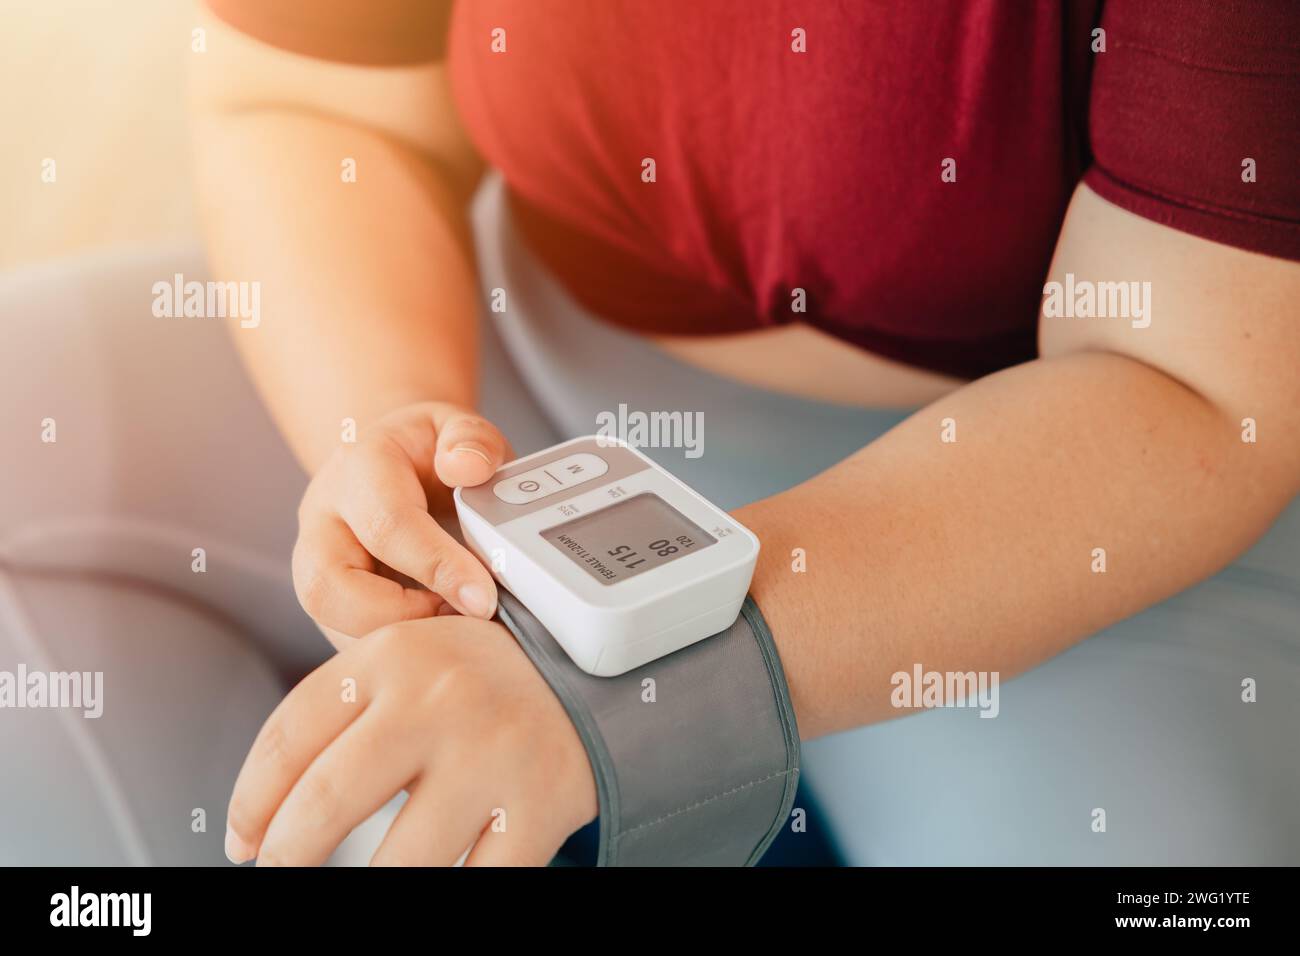 Fette Frauen, die den Blutdruck mit Handgelenkblutgefäßen messen, überwachen moderne häusliche medizinische Geräte Stockfoto